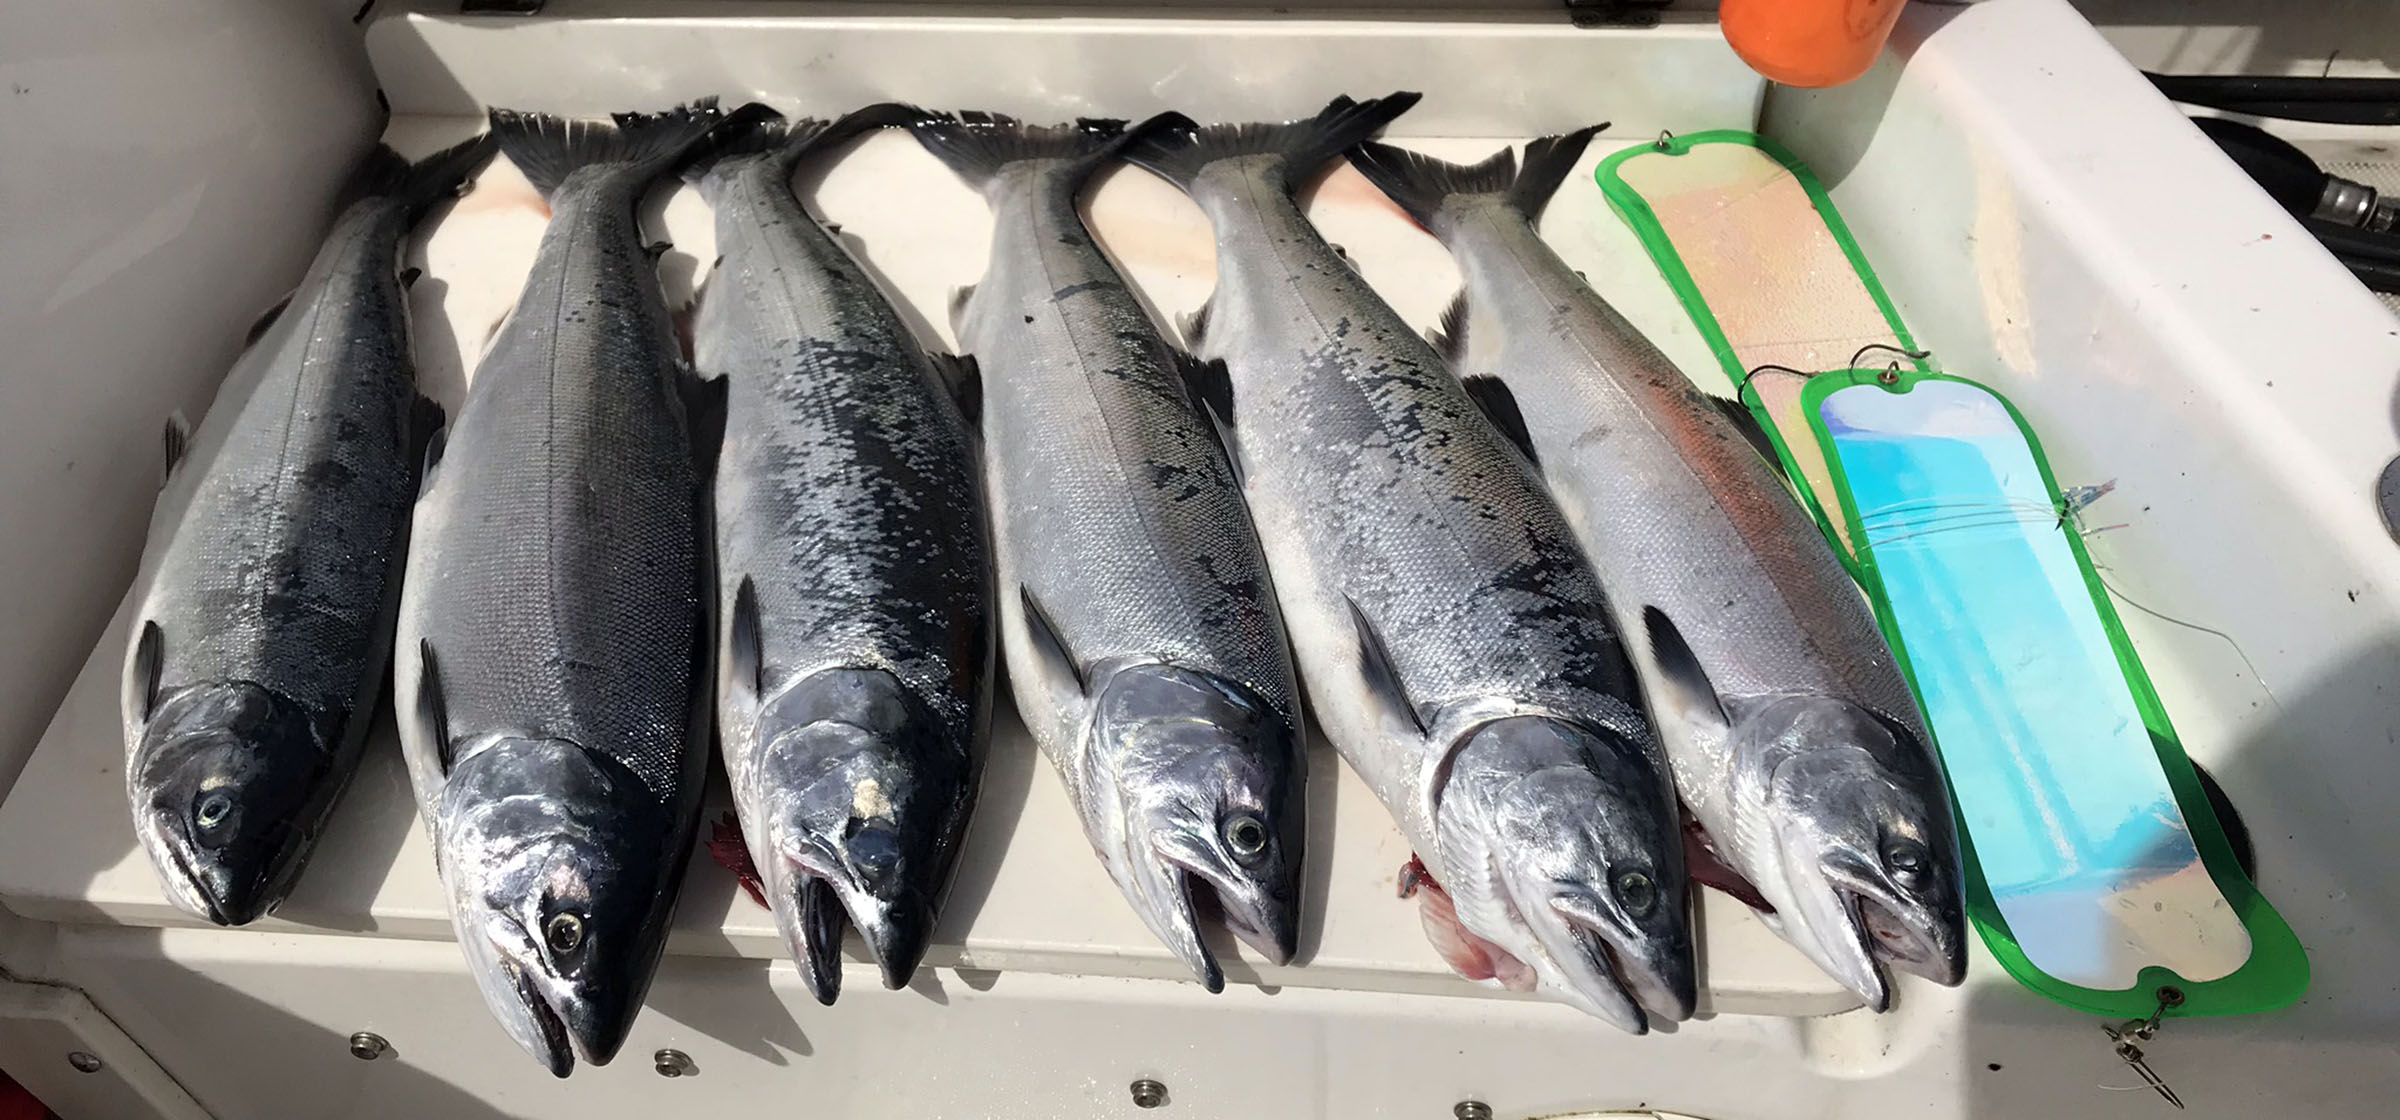 https://riptidefish.com/wp-content/uploads/2020/06/seattle-coho-salmon-fishing-marine-area-10.jpg